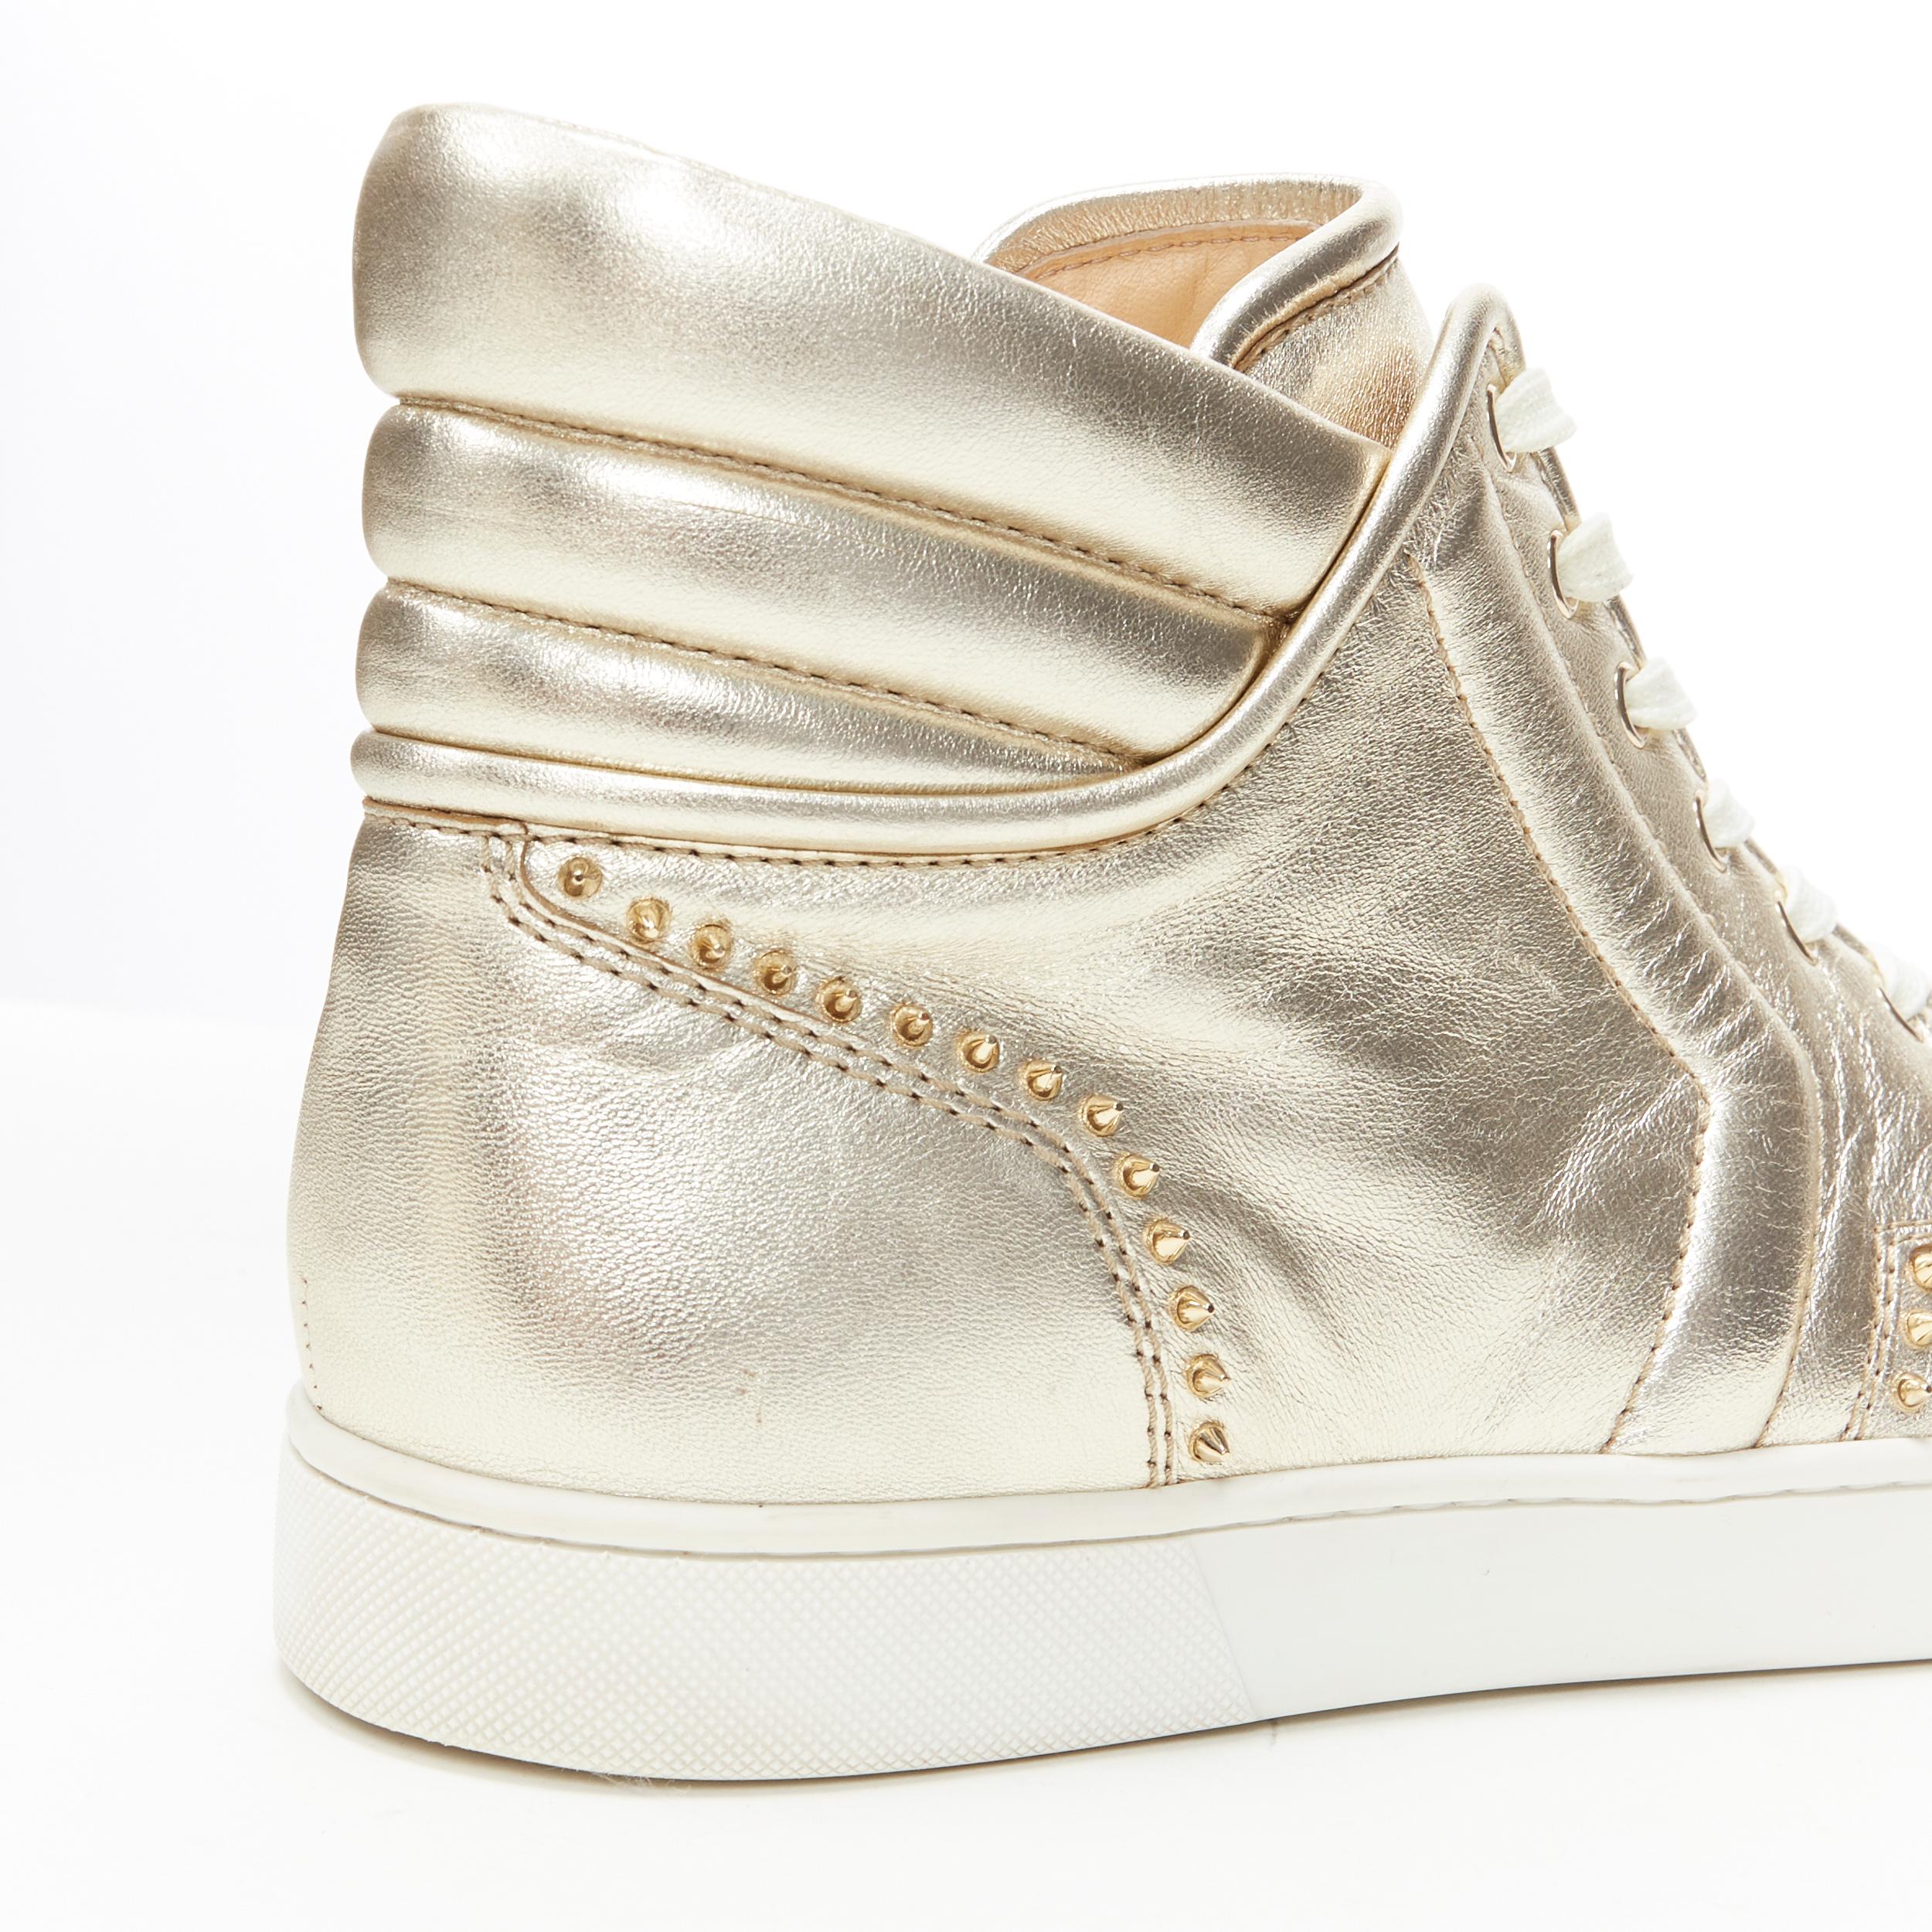 CHRISTIAN LOUBOUTIN light metallic gold spike studded high top sneaker EU43.5 3